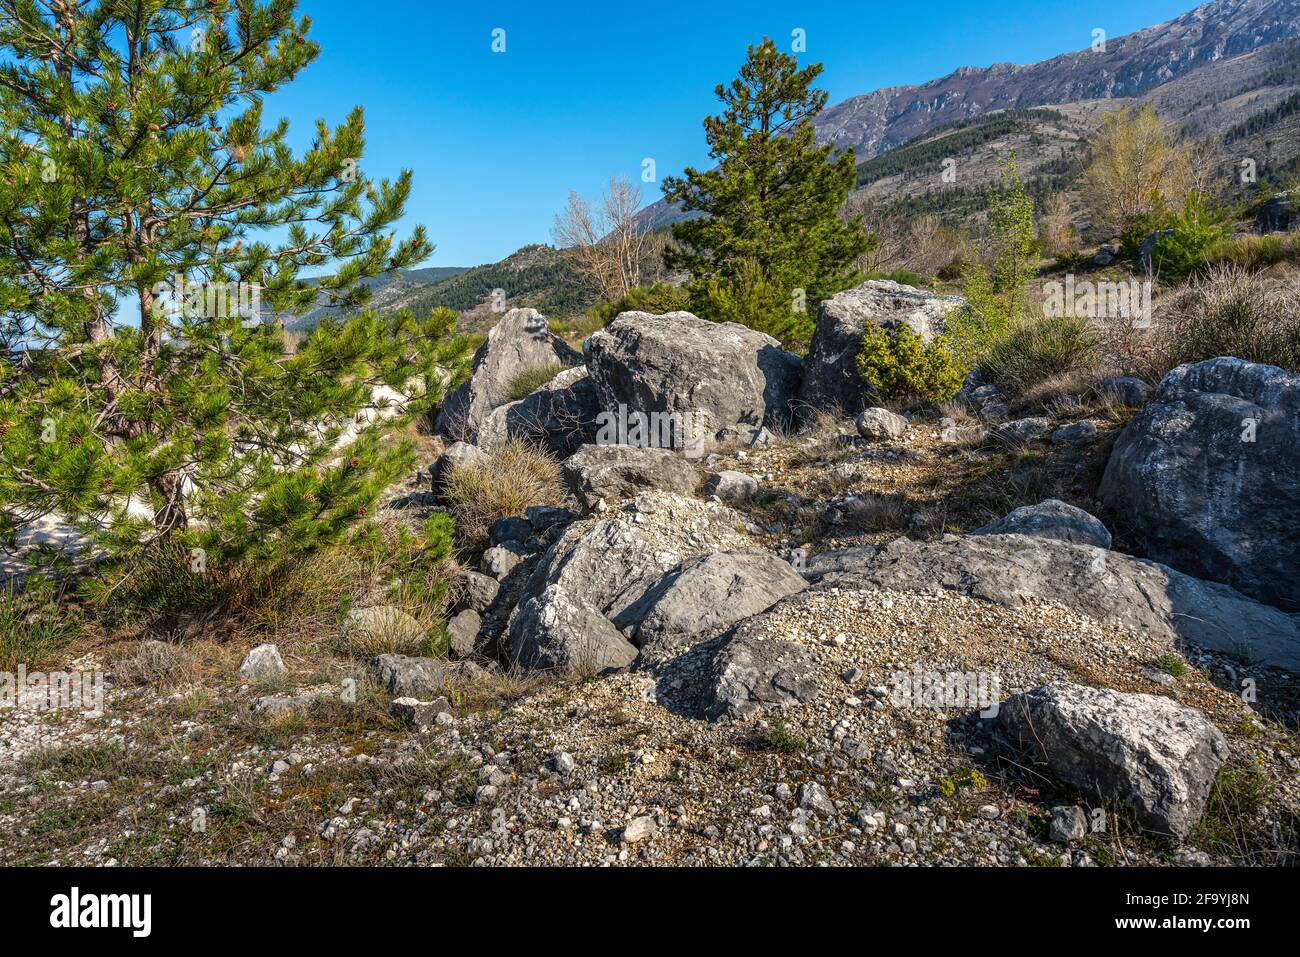 Bergpanorama mit schwarzen Kiefern, Büschen und Felsbrocken im Vordergrund. Nationalpark Maiella, Abruzzen, Italien, Europa Stockfoto